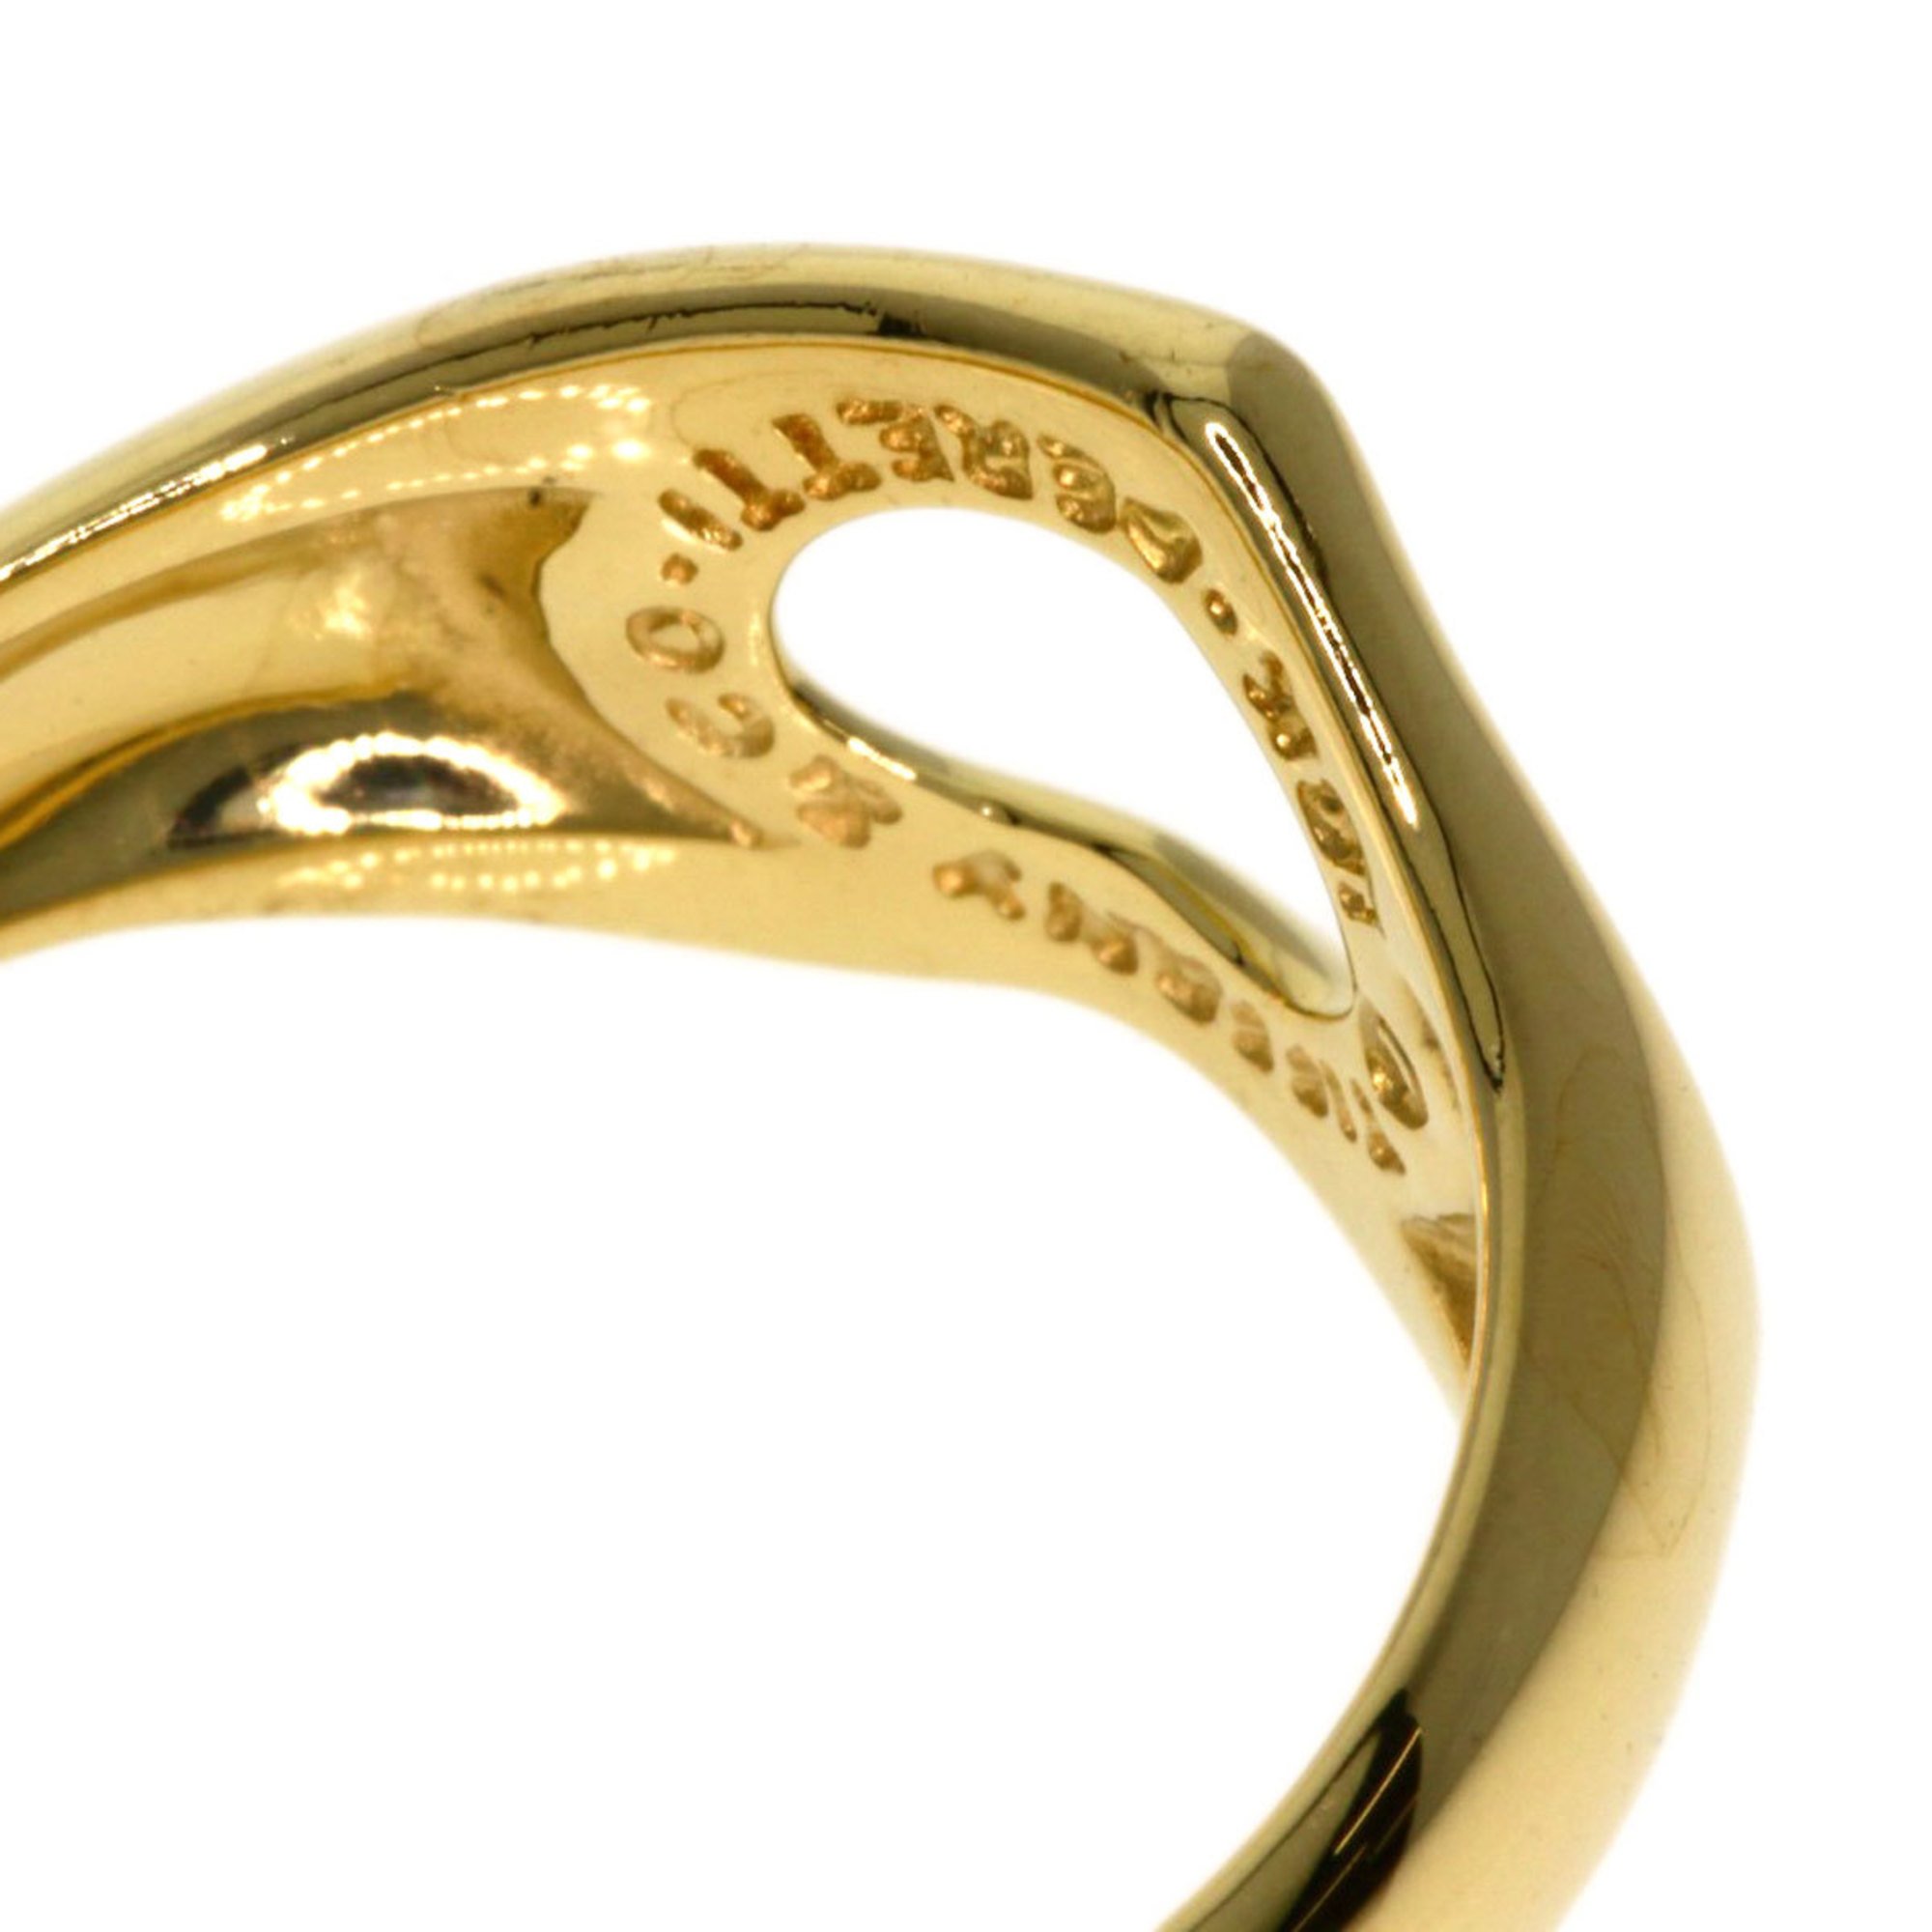 Tiffany & Co. Heart Ring, 18K Yellow Gold, Women's, TIFFANY